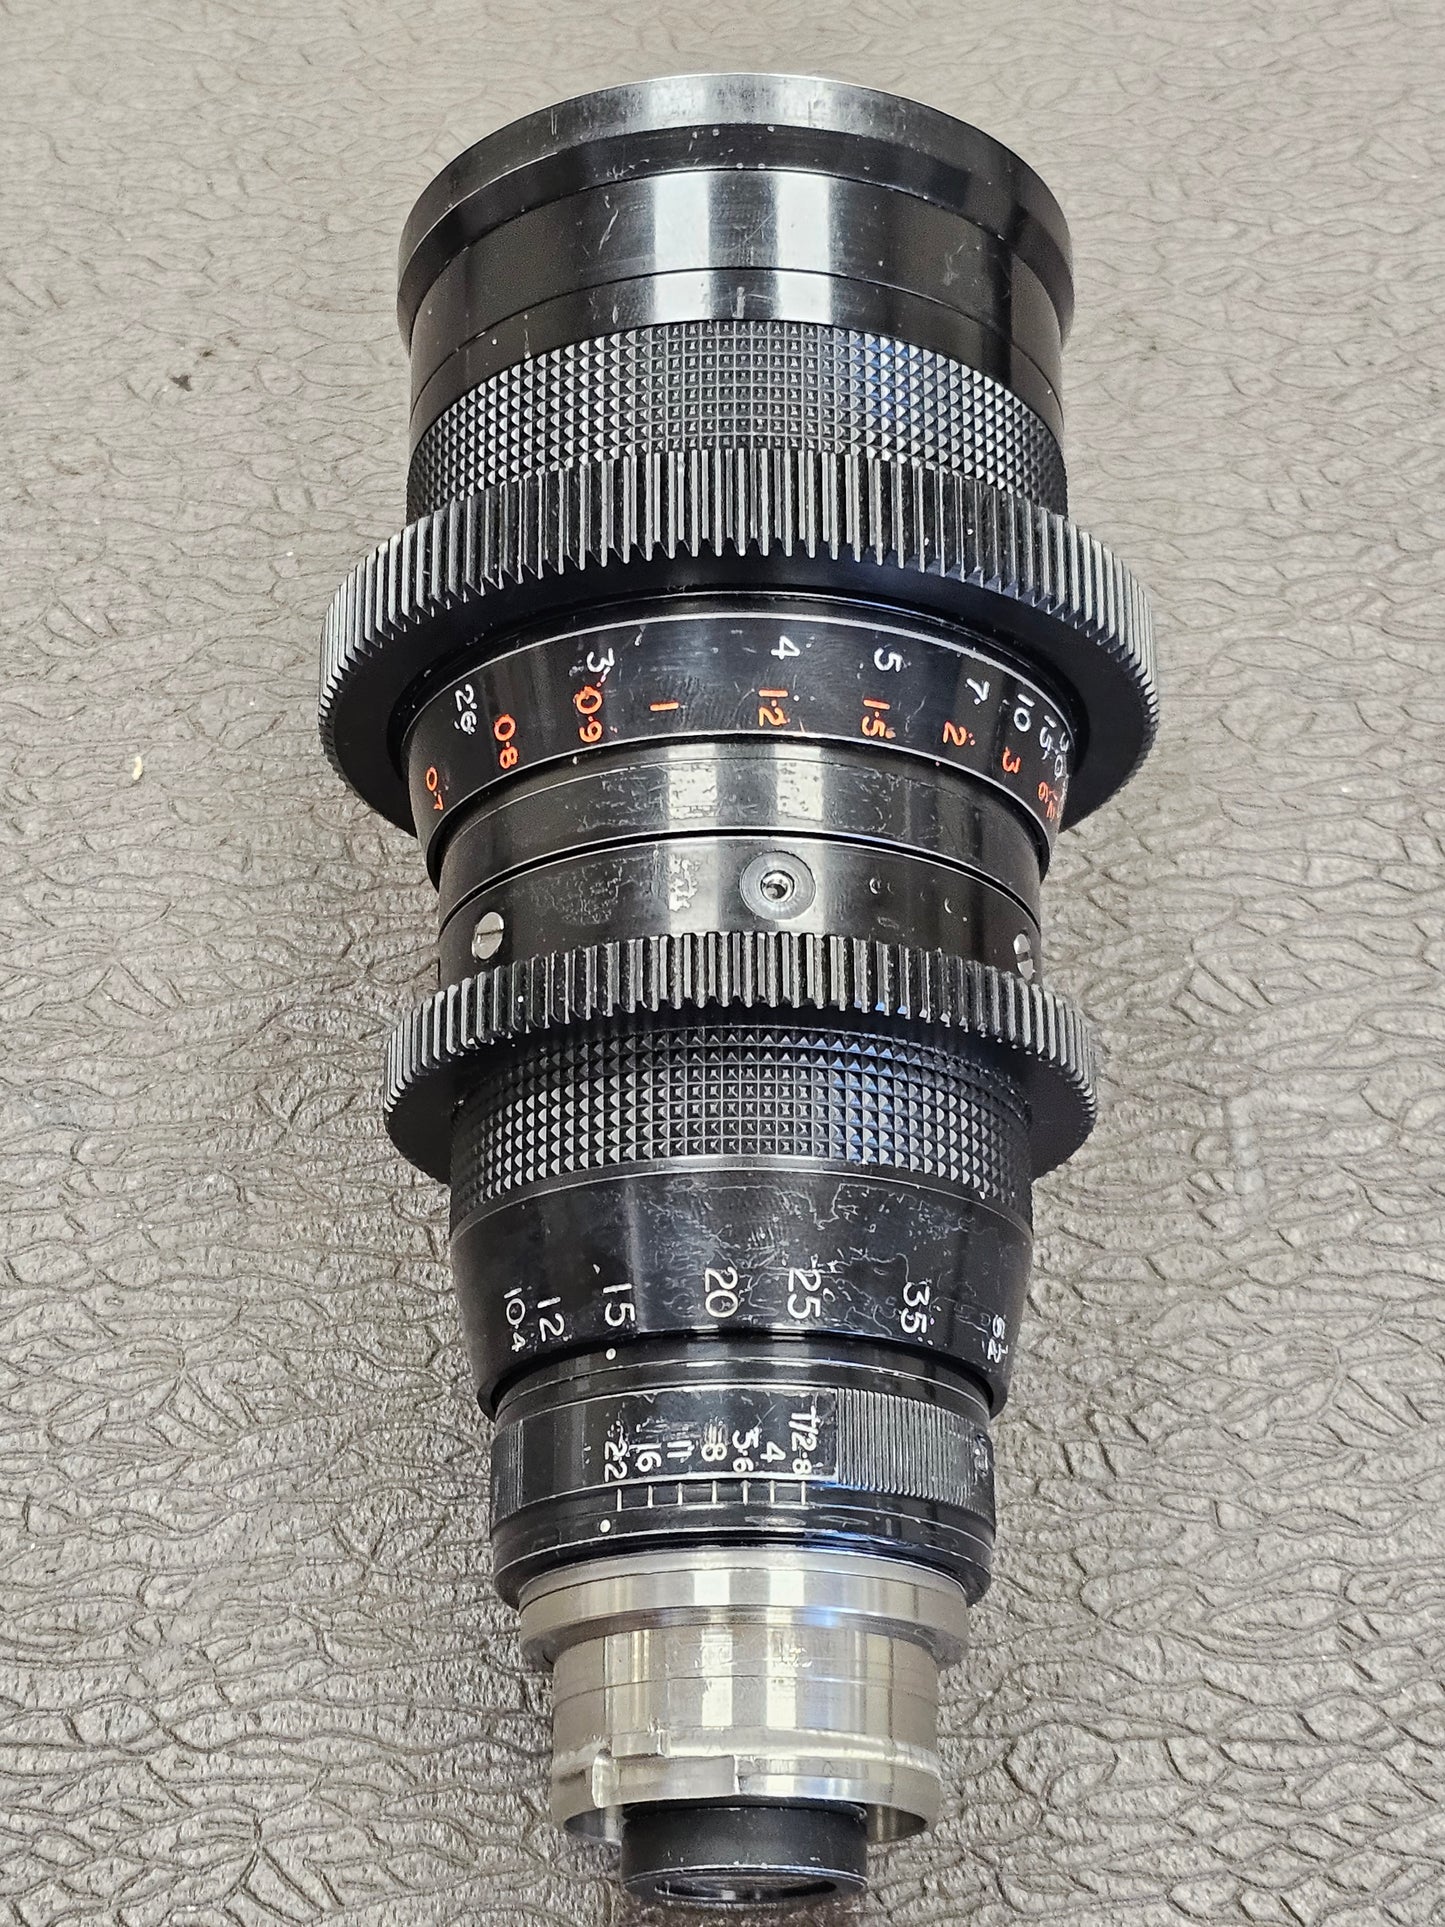 Taylor-Hobson Cooke VaroKinetal 10.4-52mm T2.8 ( Super 16mm ) Zoom Lens Arri Bayonet Mount S# 787175